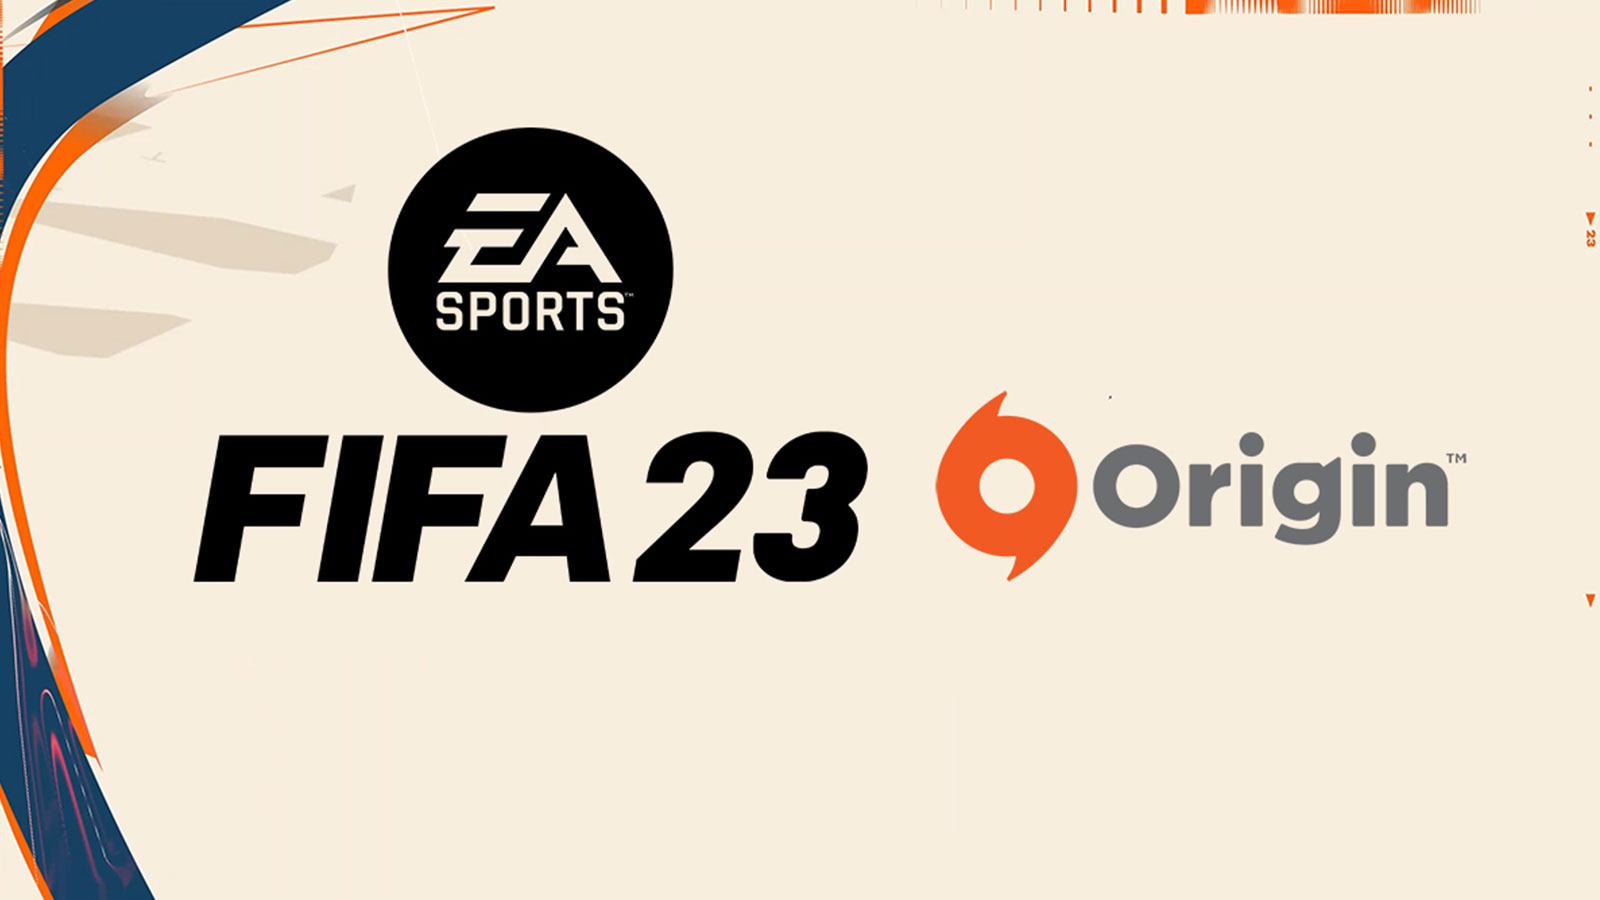 FIFA 23 Origin